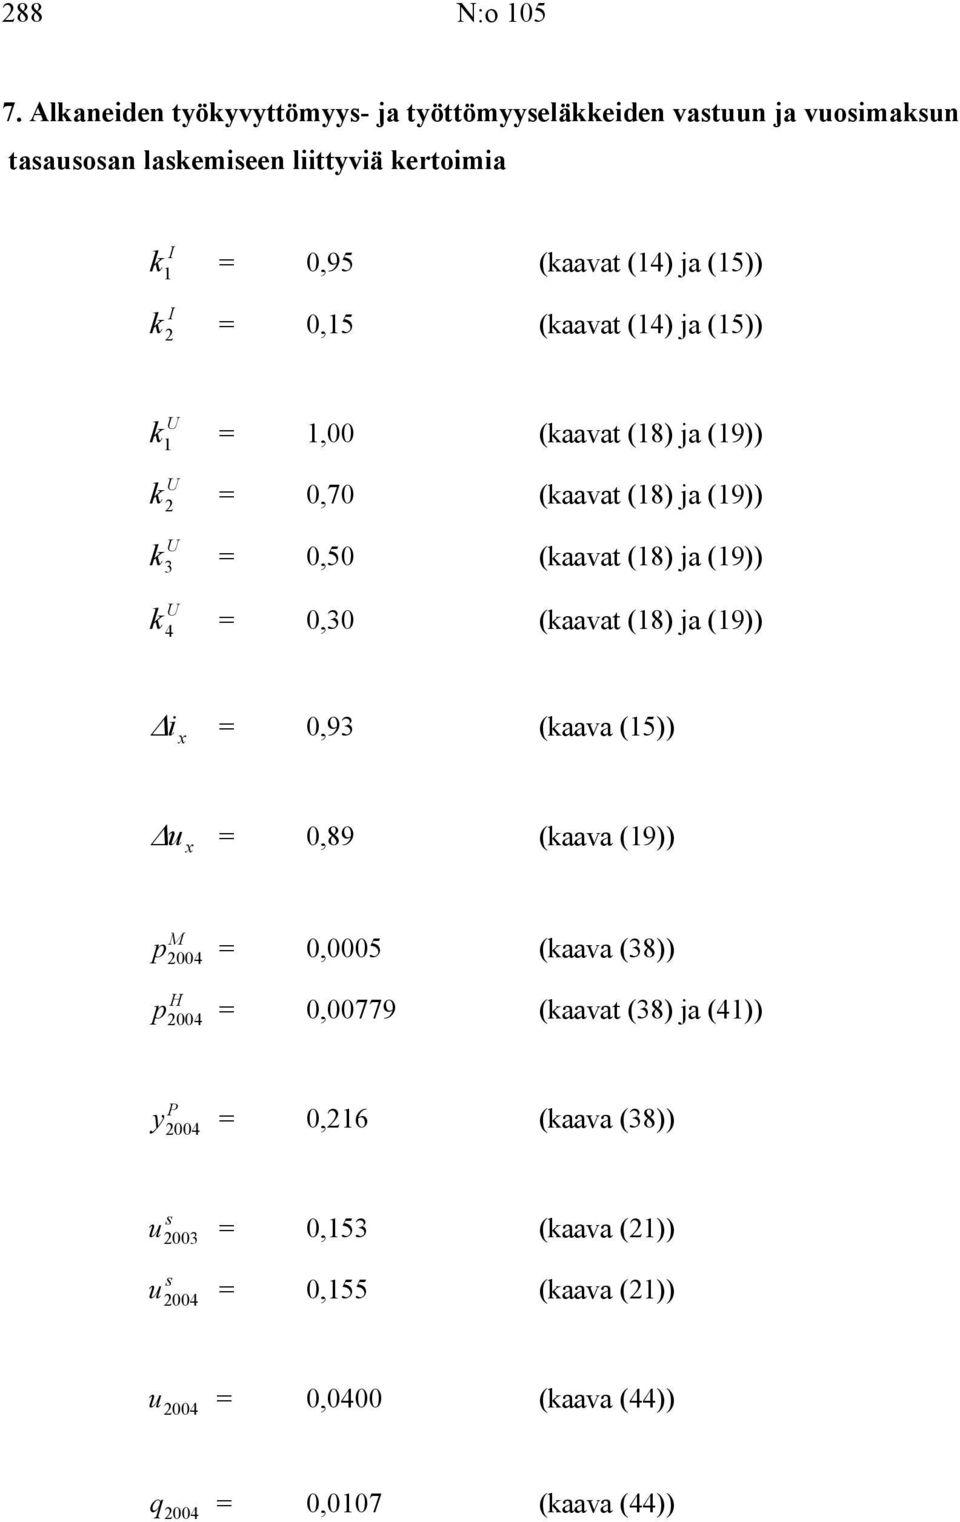 I k 2 = 0,15 (kaavat (14) ja (15)) U k 1 = 1,00 (kaavat (18) ja (19)) U k 2 = 0,70 (kaavat (18) ja (19)) U k 3 = 0,50 (kaavat (18) ja (19)) U k 4 = 0,30